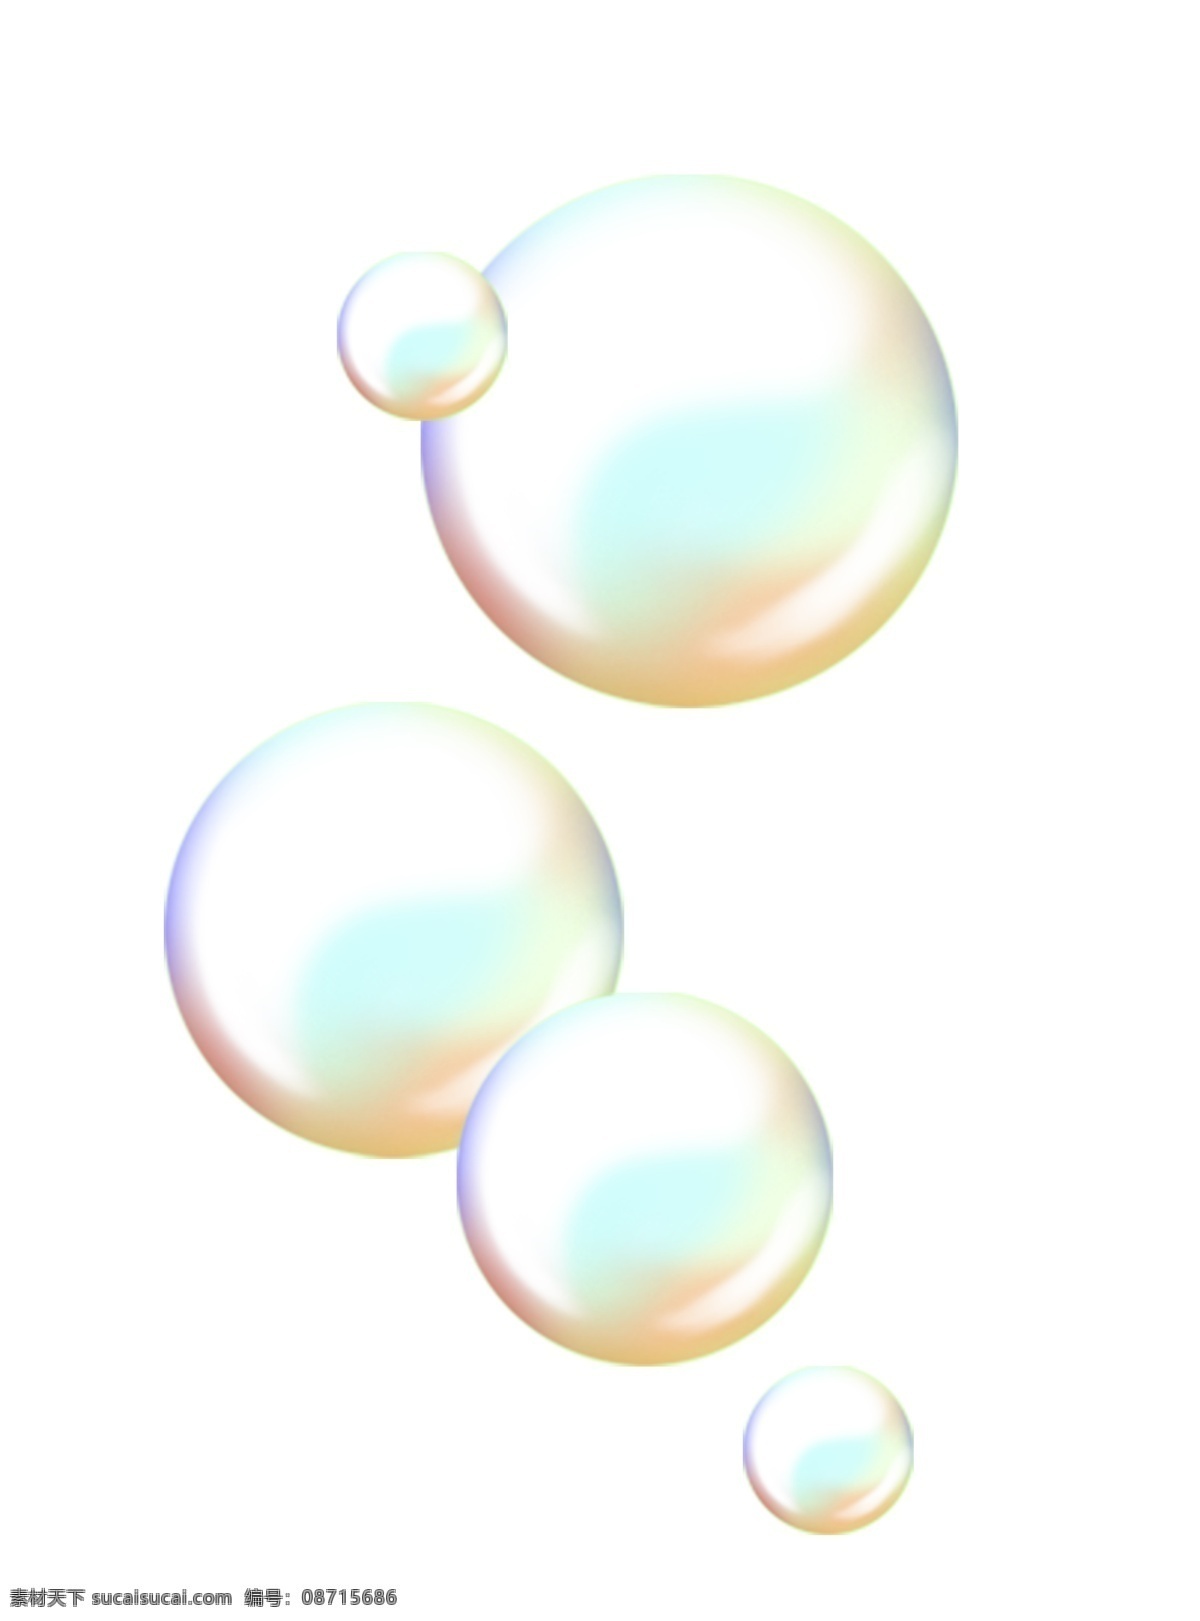 晶莹 漂浮 泡泡 插画 晶莹的泡泡 卡通插画 气泡插画 泡泡插画 肥皂泡泡 玩具泡泡 五彩的泡泡